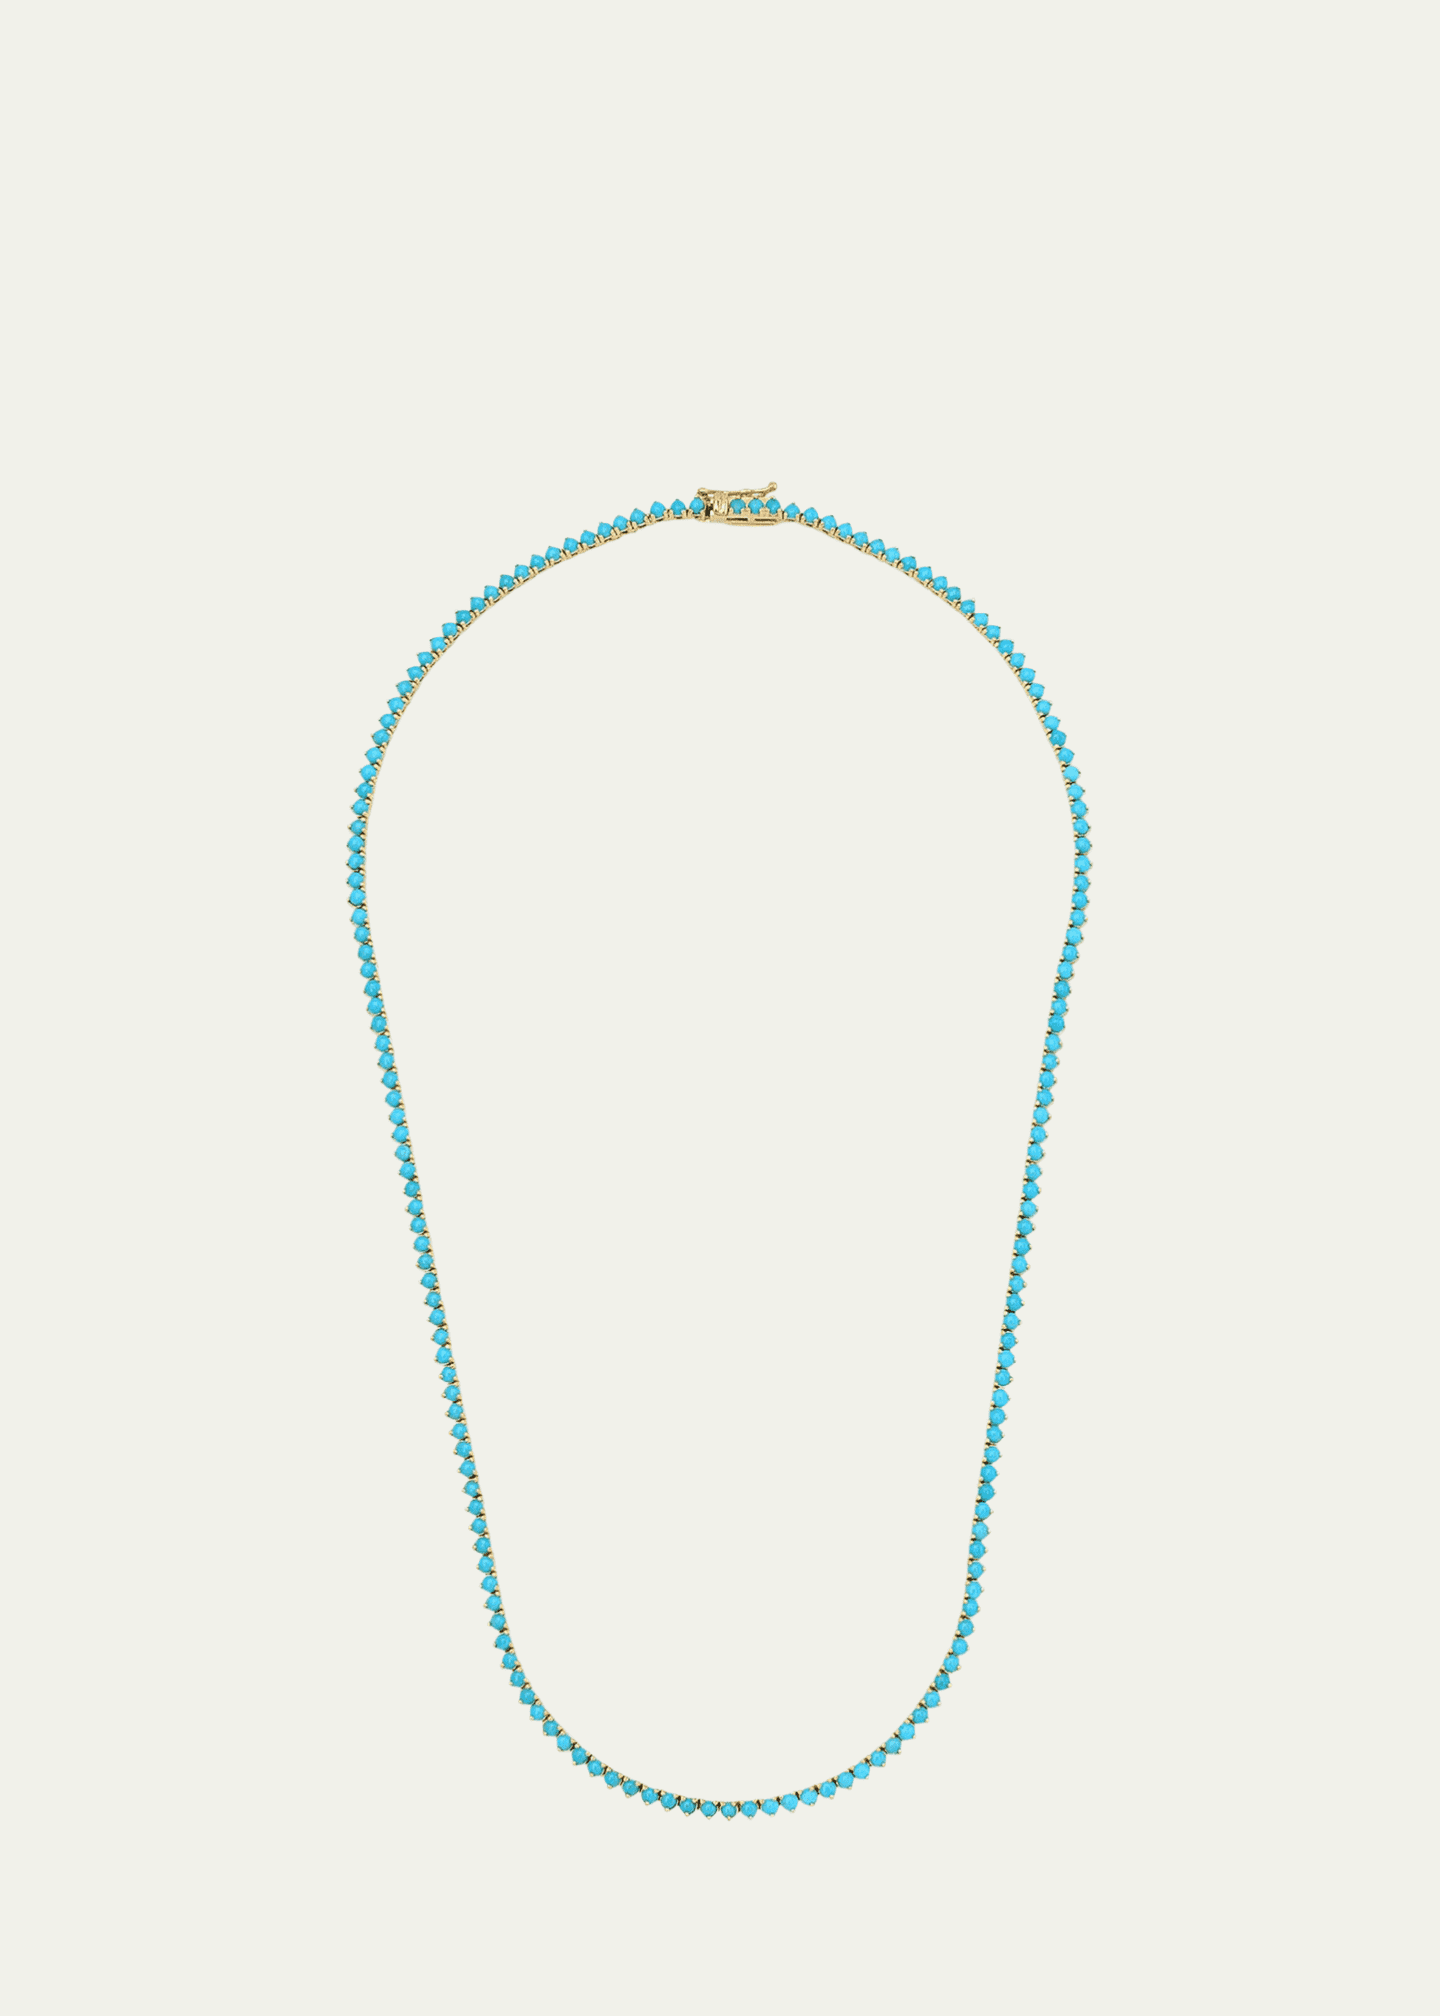 Jennifer Meyer 18k Turquoise 3-Prong Tennis Necklace Image 1 of 2